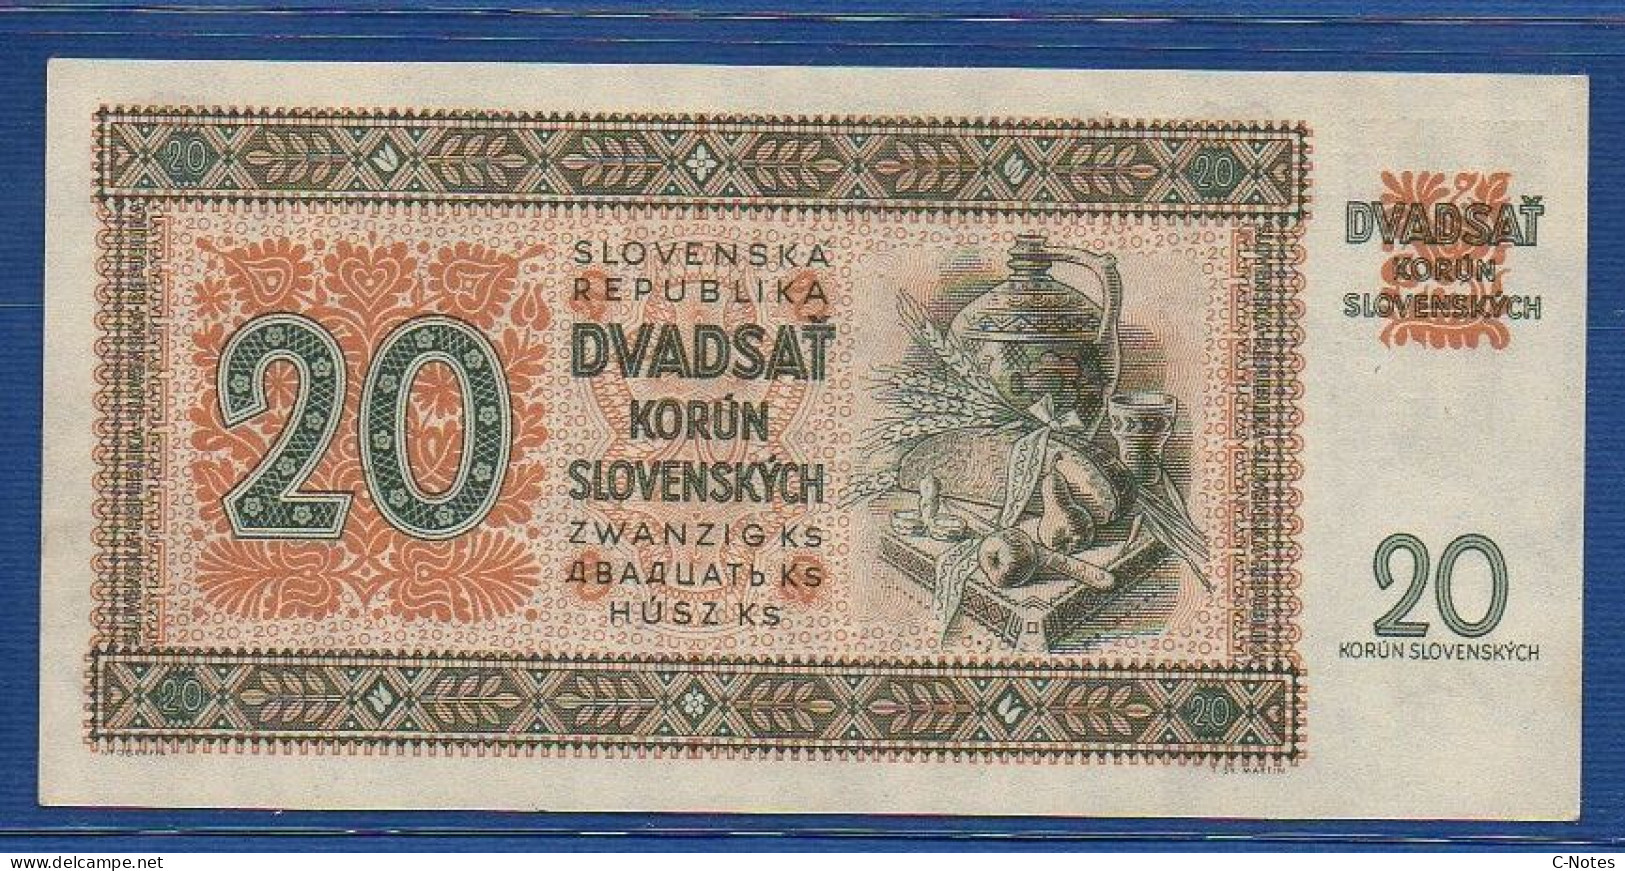 SLOVAKIA - P. 7a – 20 Korún Slovenských 1942 UNC- Serie Nz11 785452 - Eslovaquia